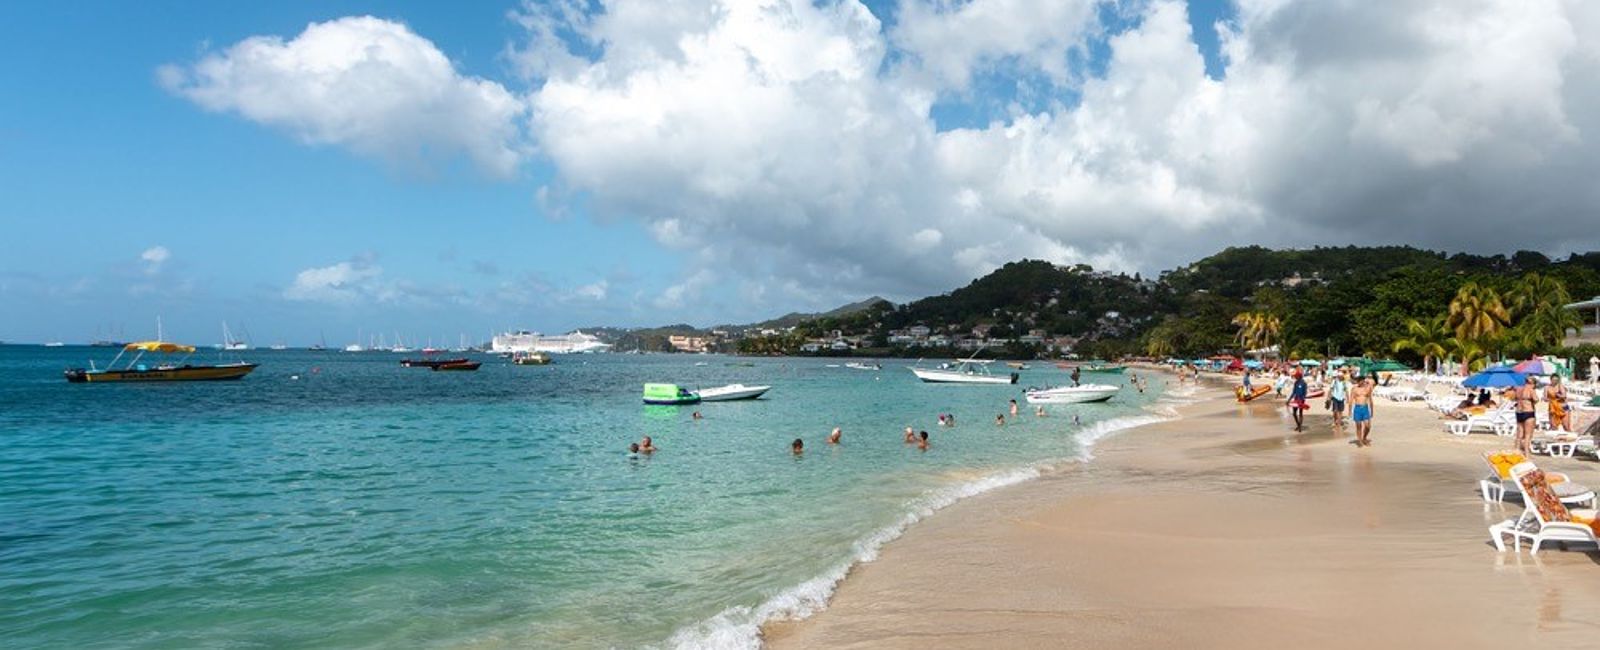 NEWS
 Die schönsten Strände der Karibik  
